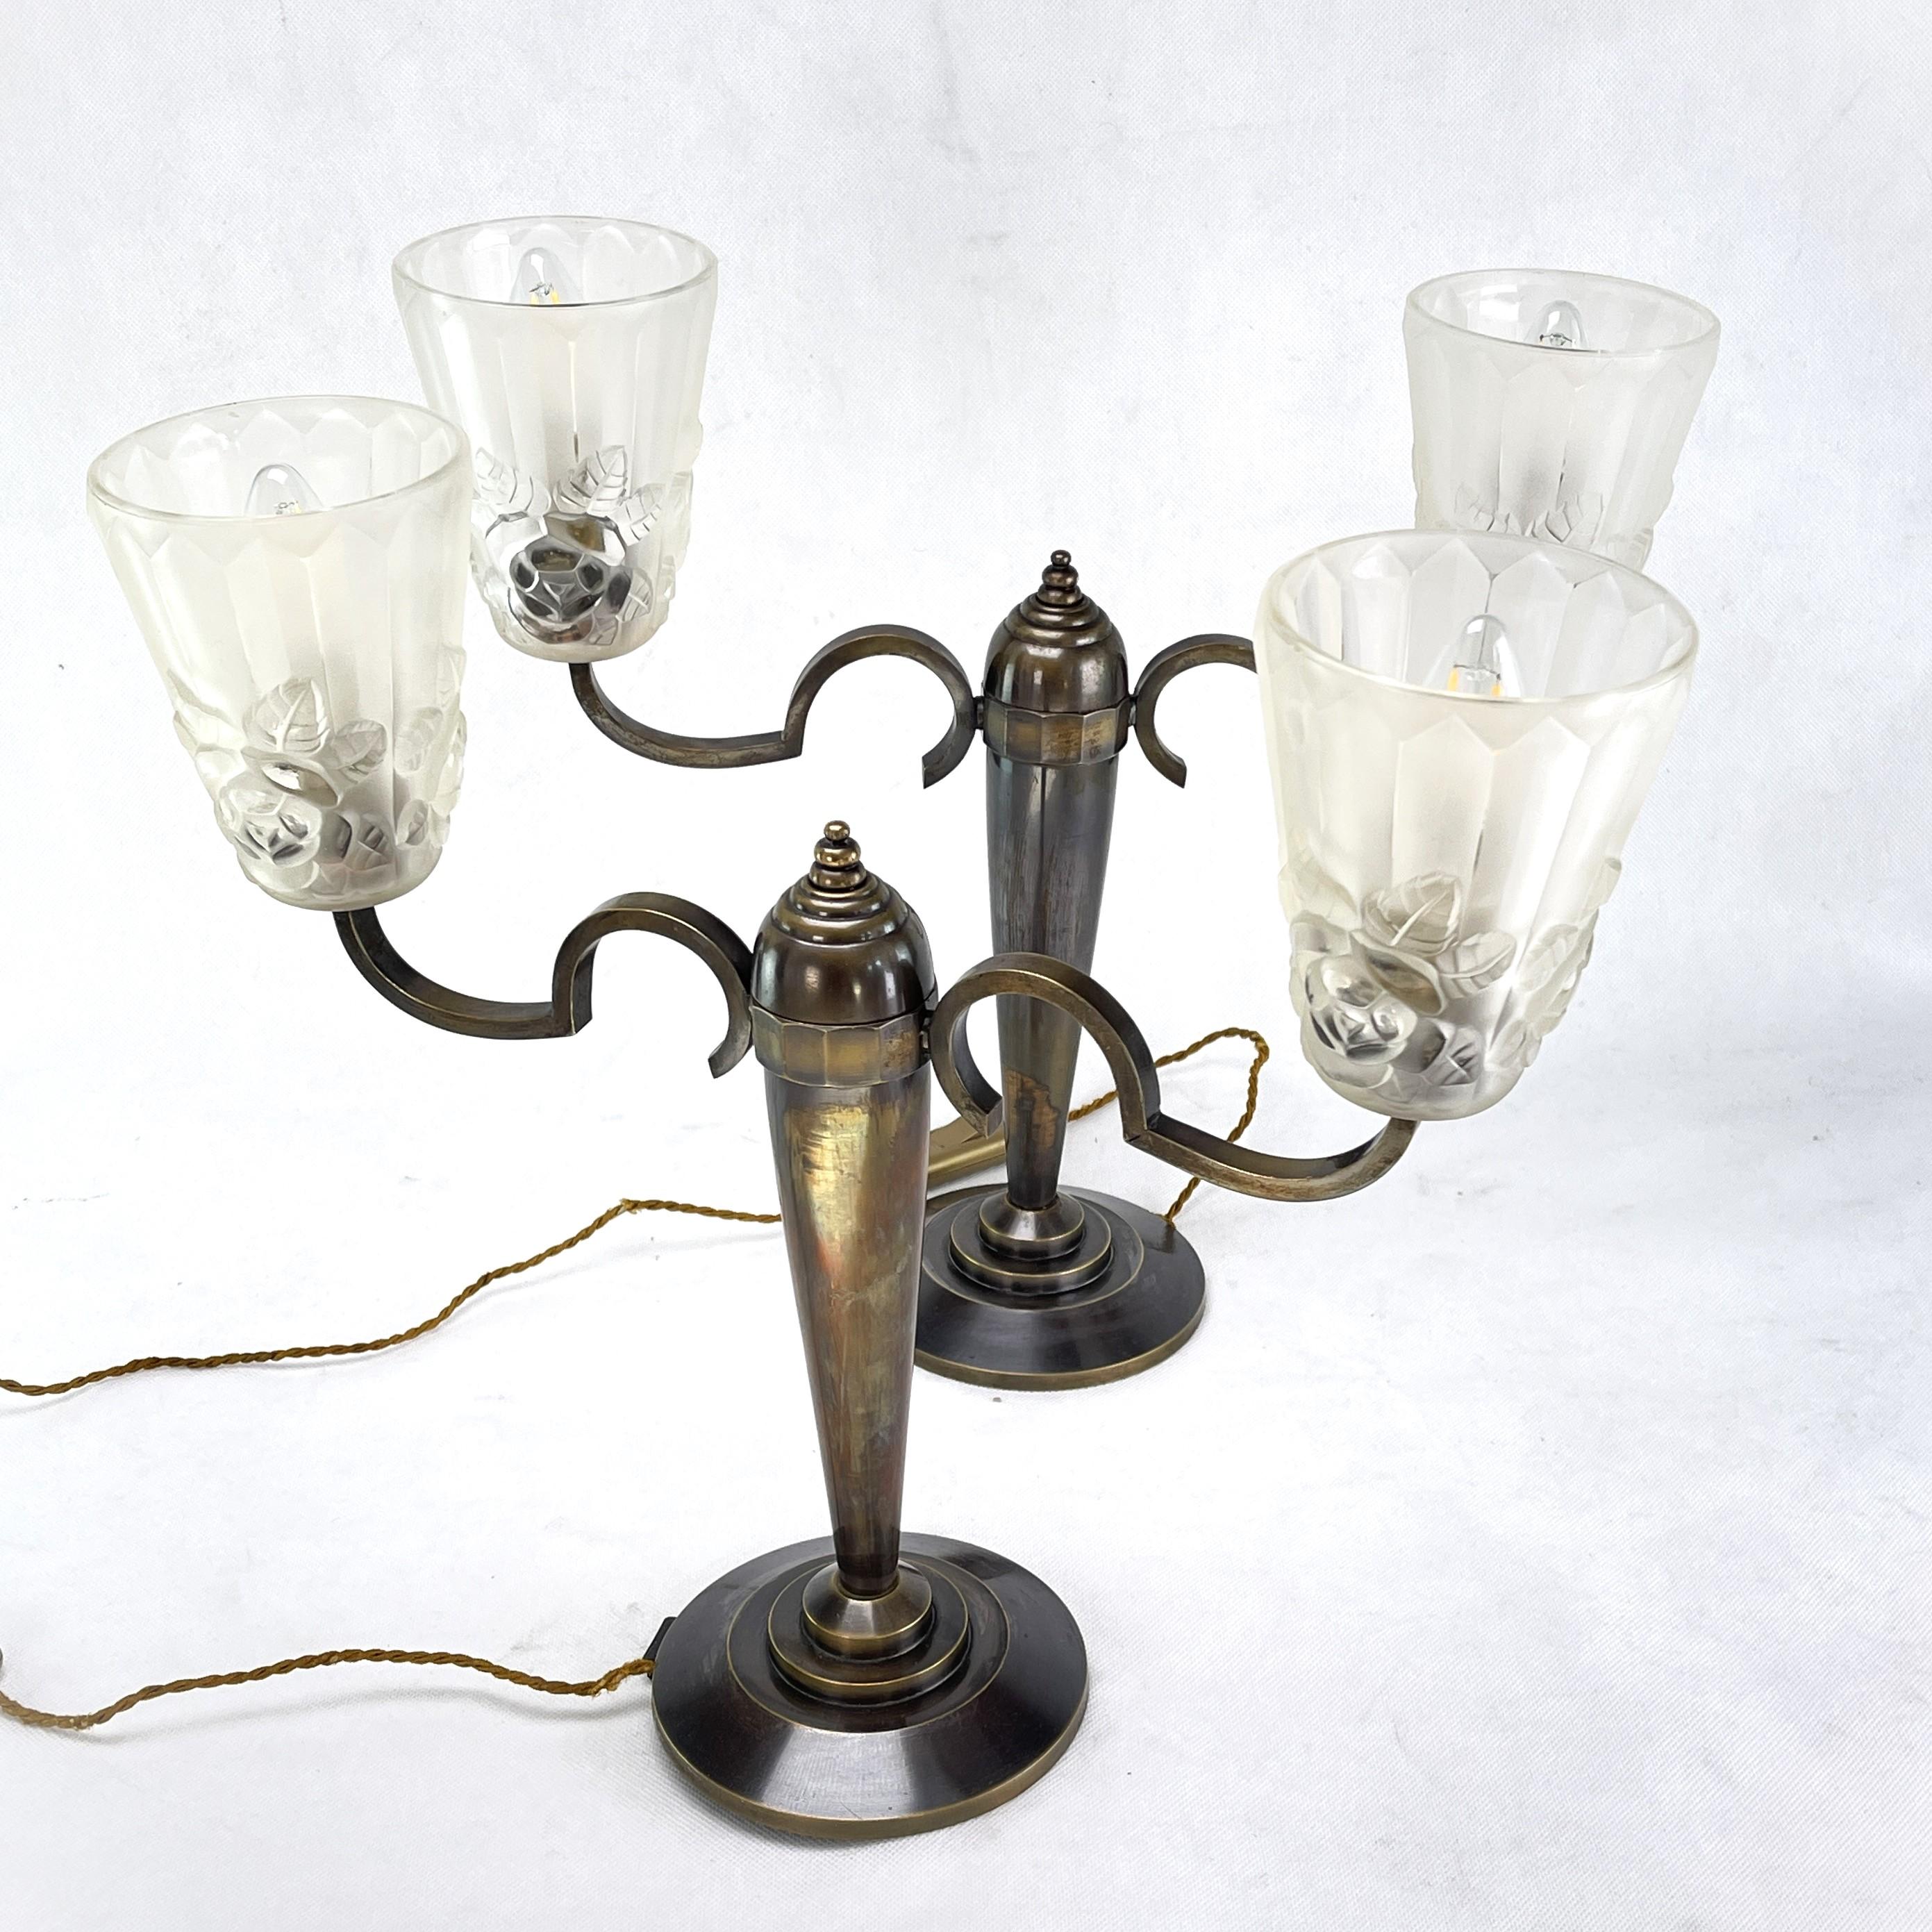 2 lampes de table Art Déco avec verres Degué - années 1940

Ces deux lampes signées sont un classique du design des années 1930/40. Les imposantes lampes sont originales et fournissent une lumière agréable.

Chaque article nettoyé comporte 2 prises